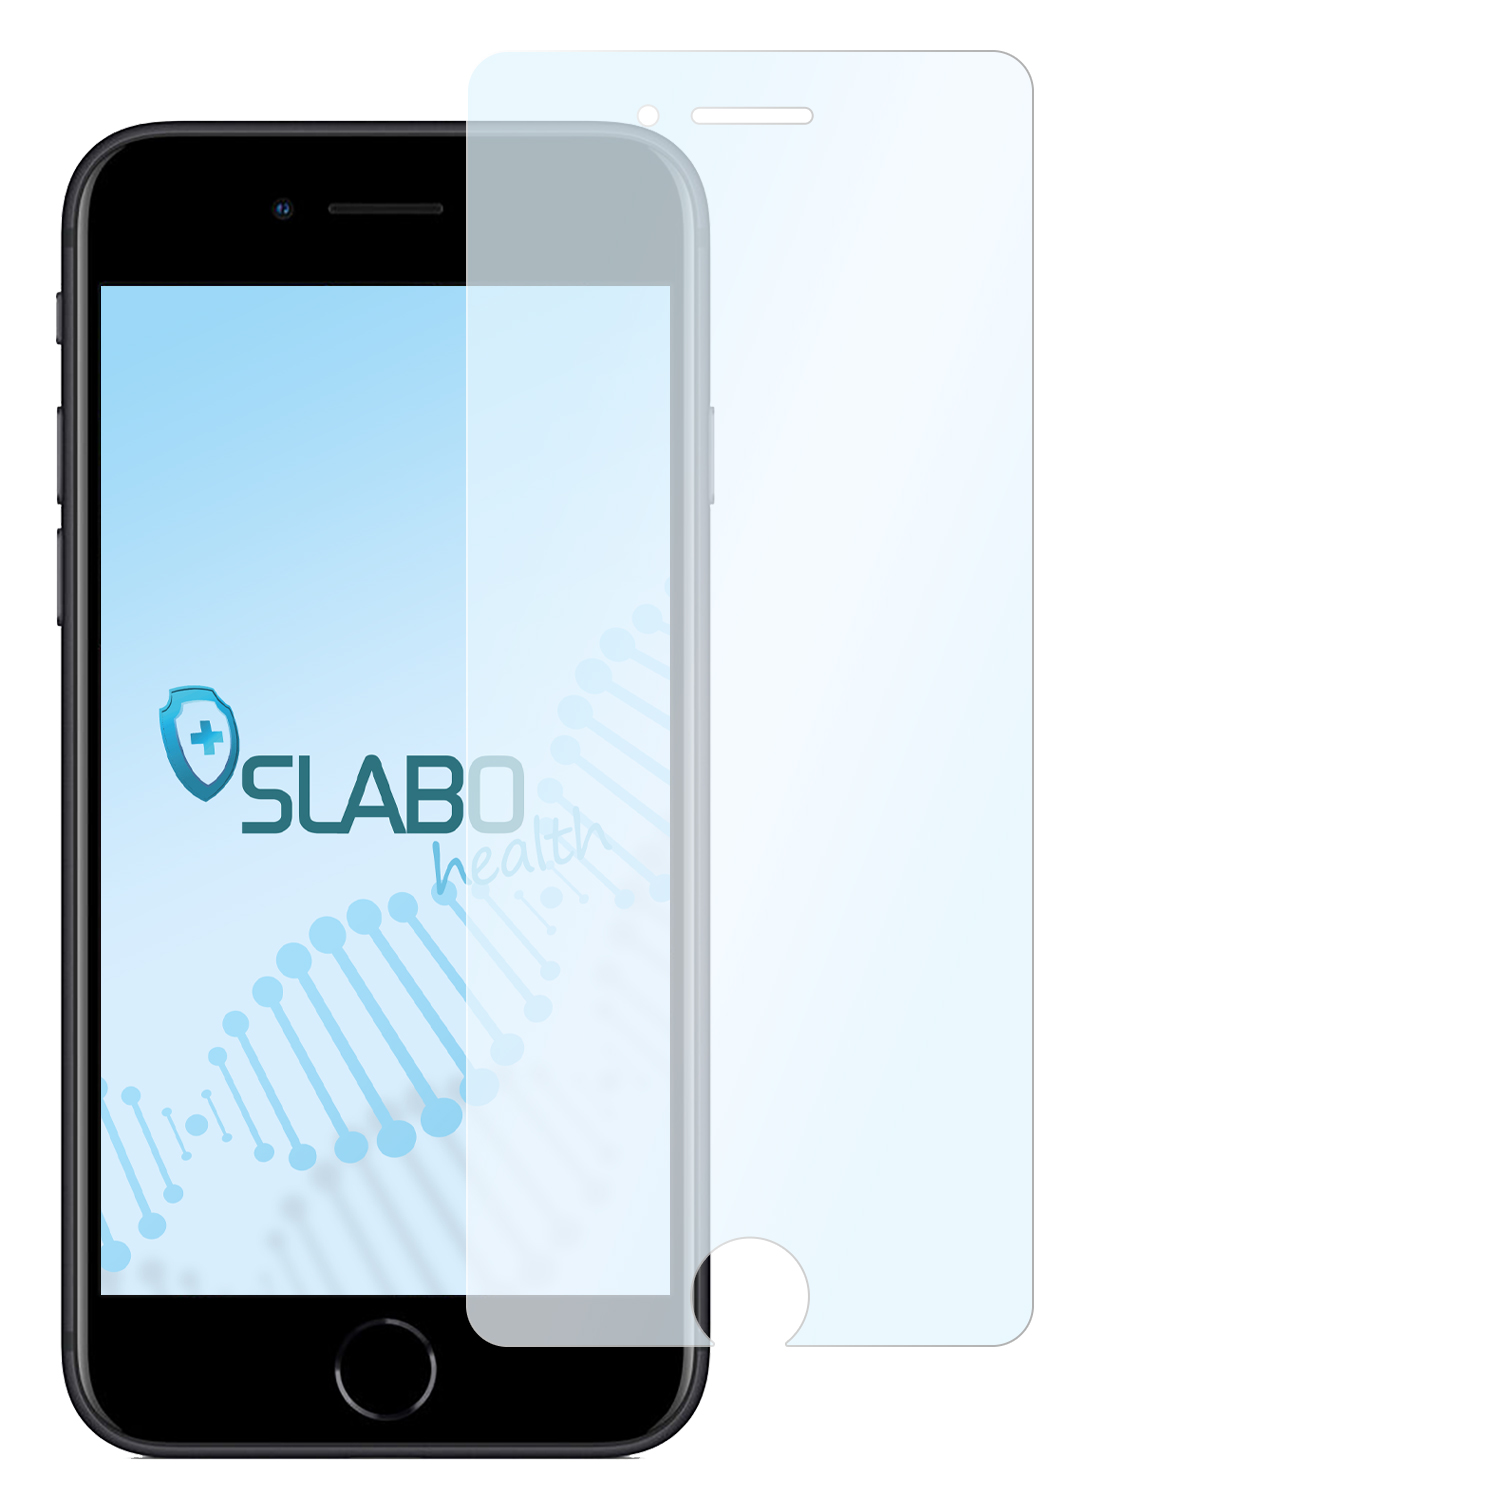 iPhone antibakterielle 2022) SLABO Hybridglasfolie flexible Apple SE | 2020 iPhone Displayschutz(für SE